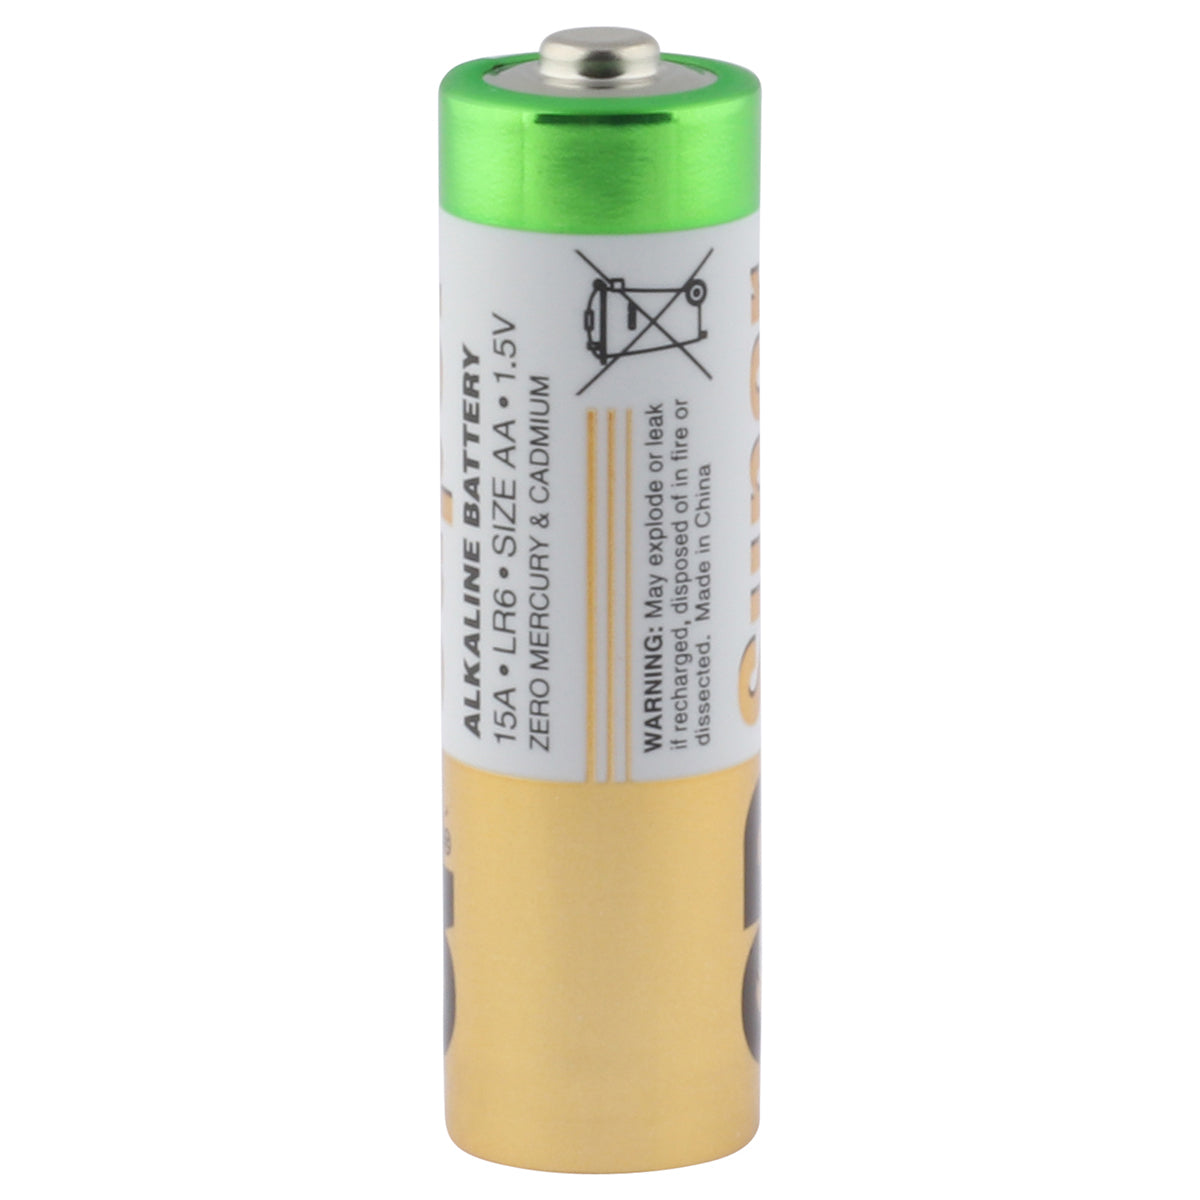 Promoten bedriegen Let op GP Alkaline Super AA Batterijen | 40 of 80 stuks | Maxmagazineshop.nl – MAX  Magazine Shop